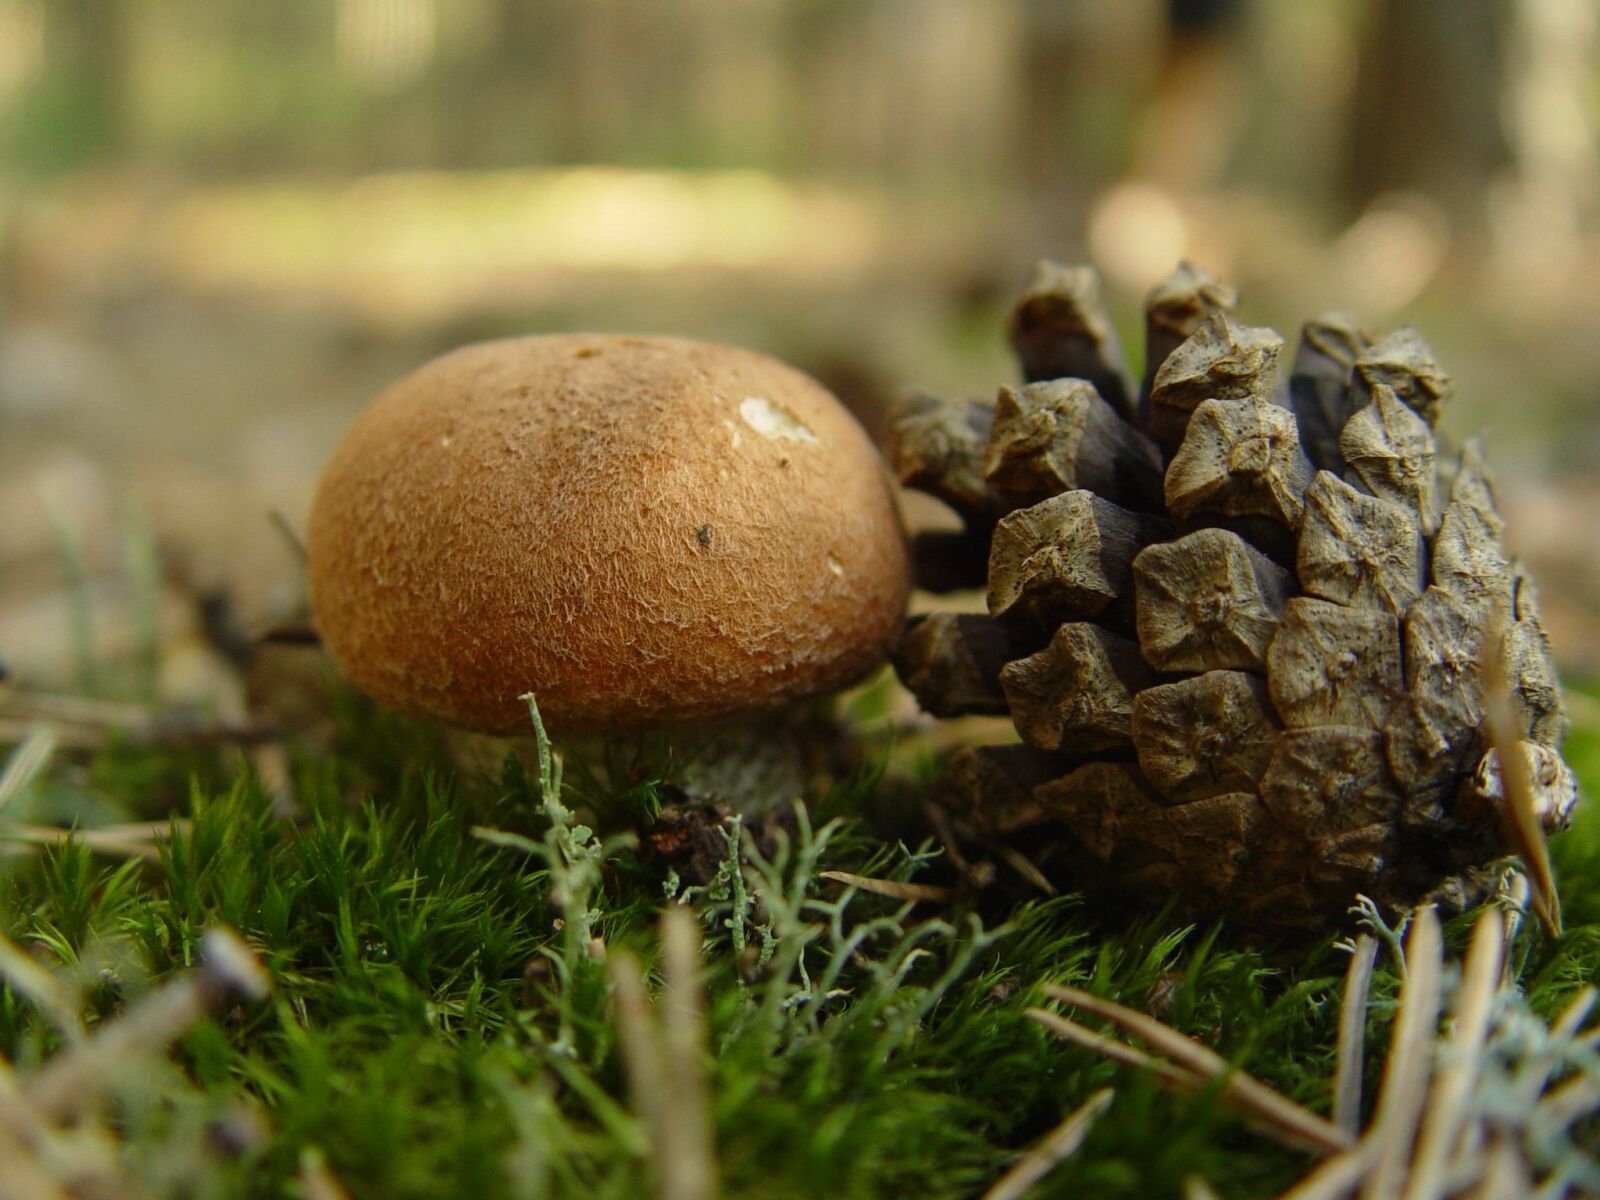 Sony CYBERSHOT sample photo. Mushroom, pine cone, nature photography